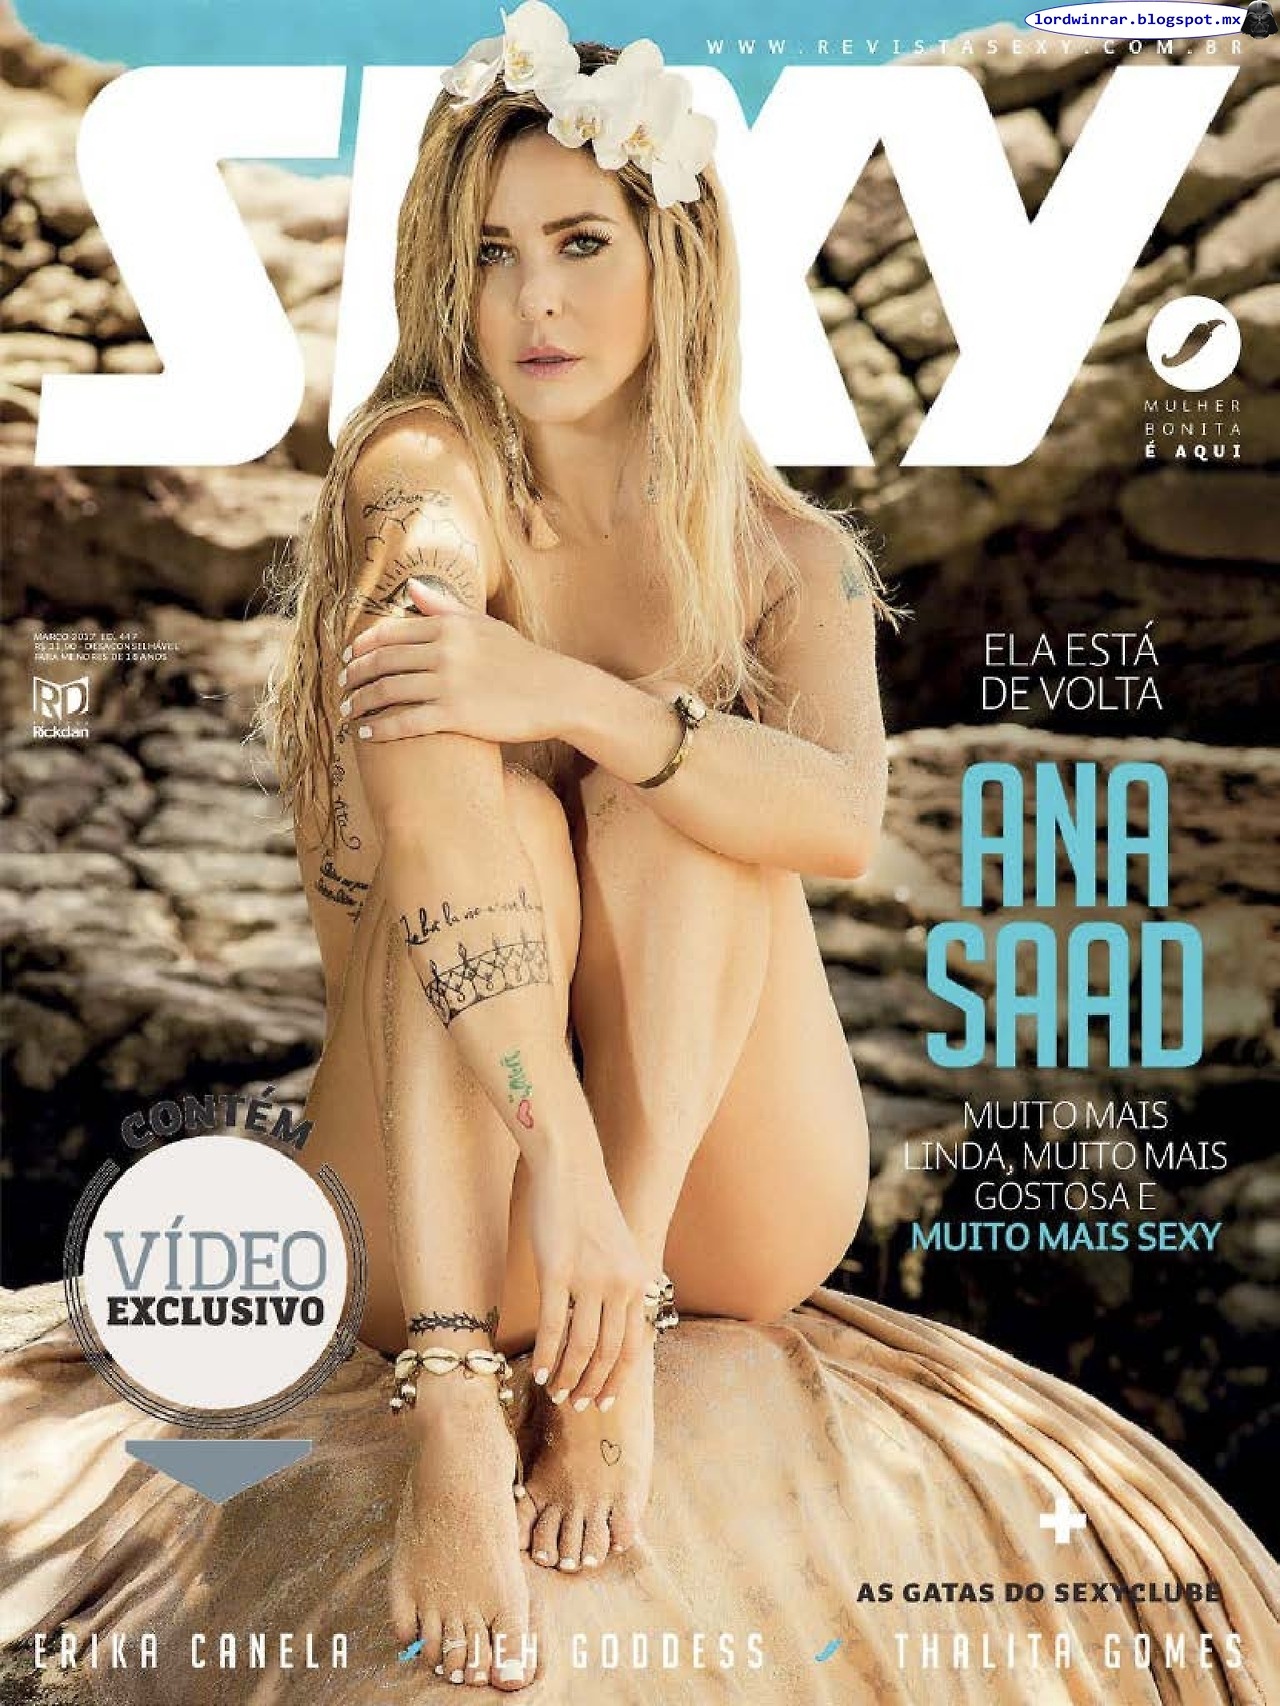   Ana Saad - Revista Sexy 2017 Marzo (48 Fotos HQ)Ana Saad desnuda en la revista